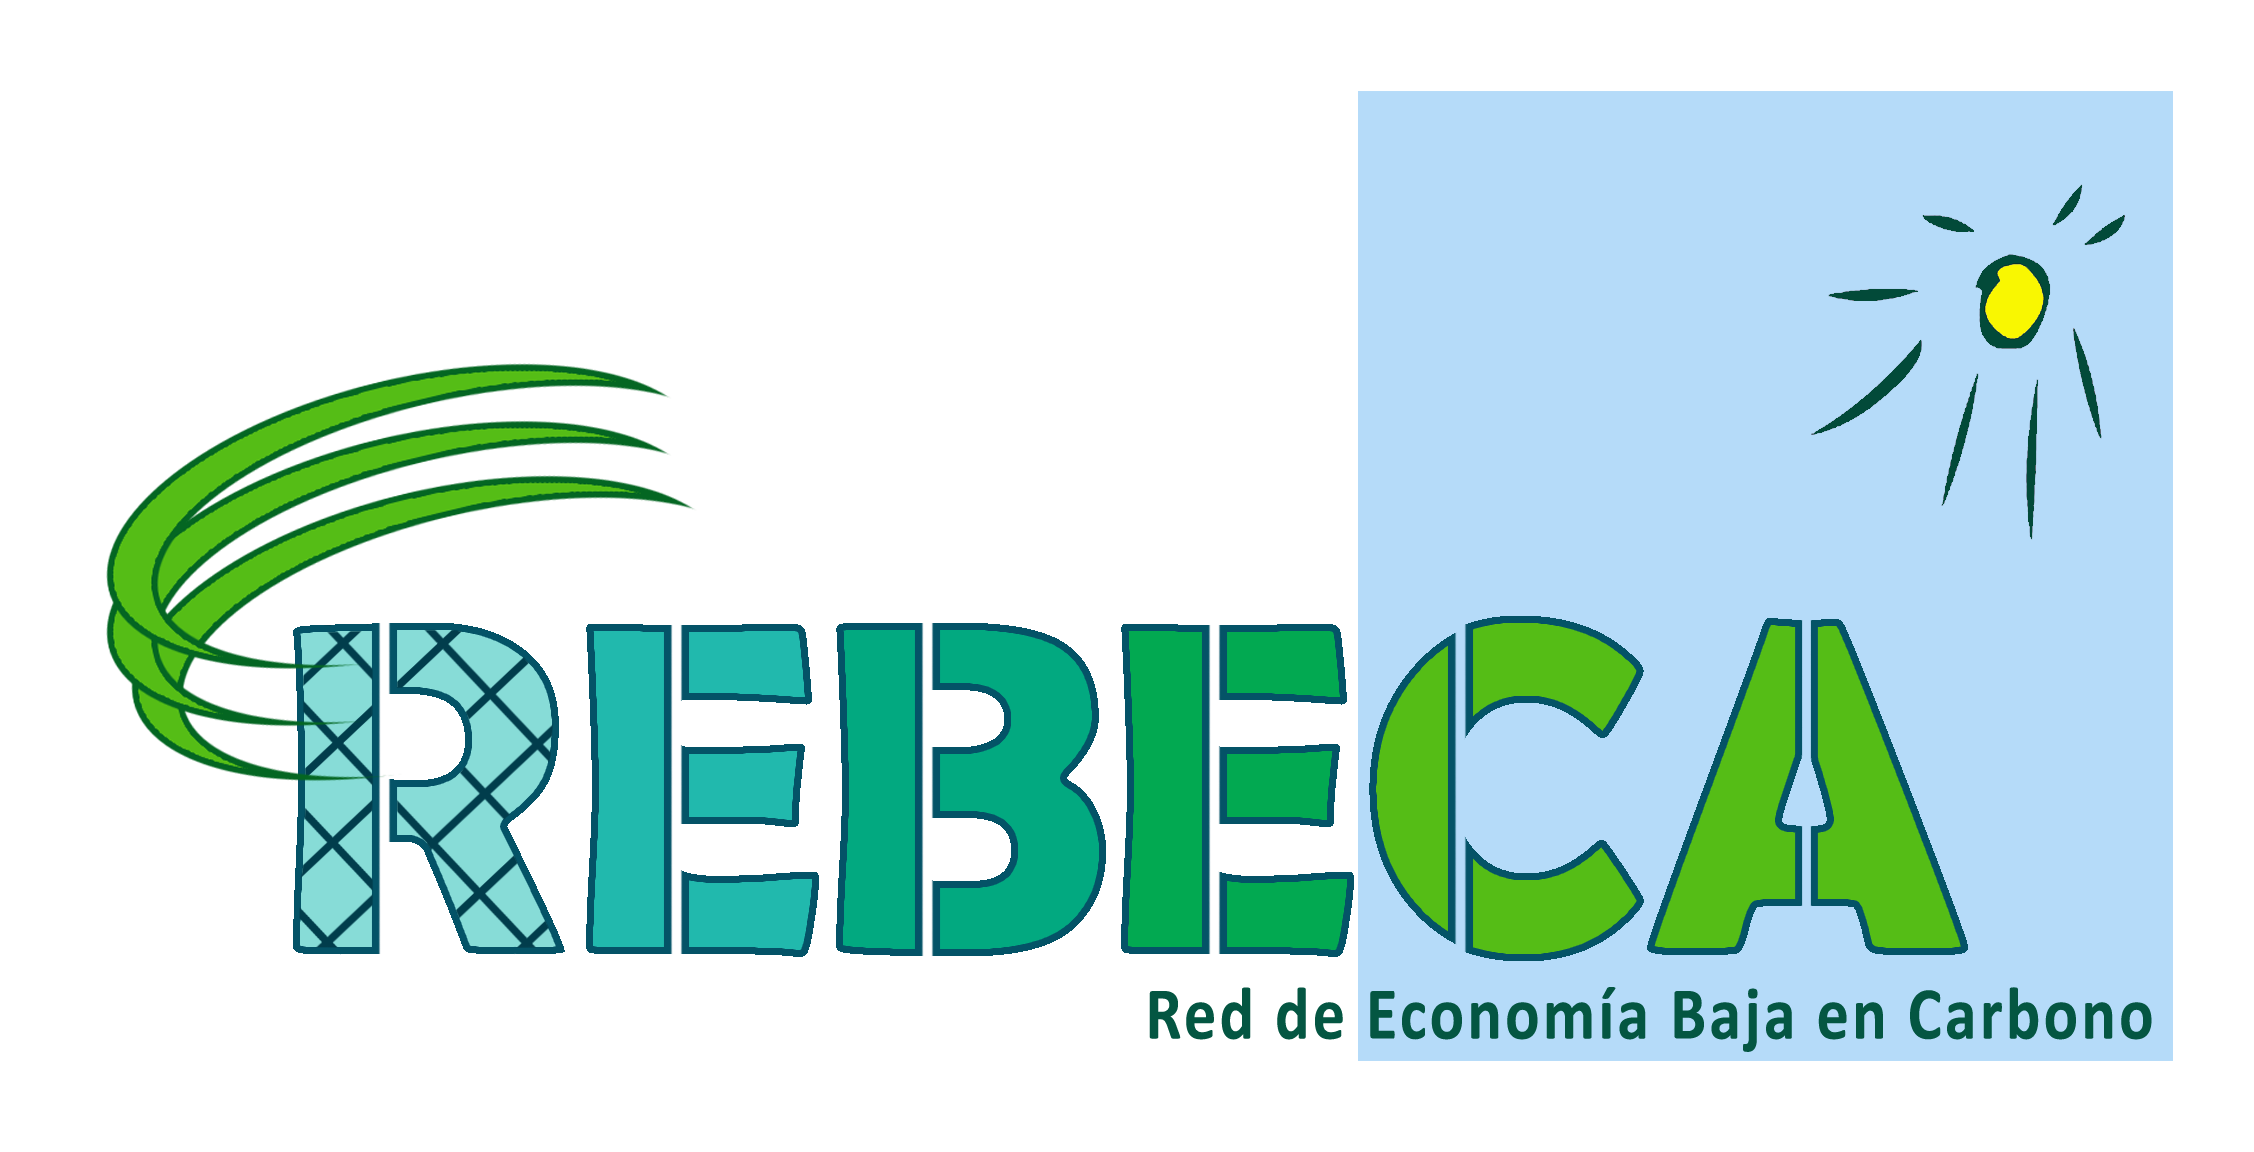 Logotipo REBECA. Red de Economía Baja en Car bono